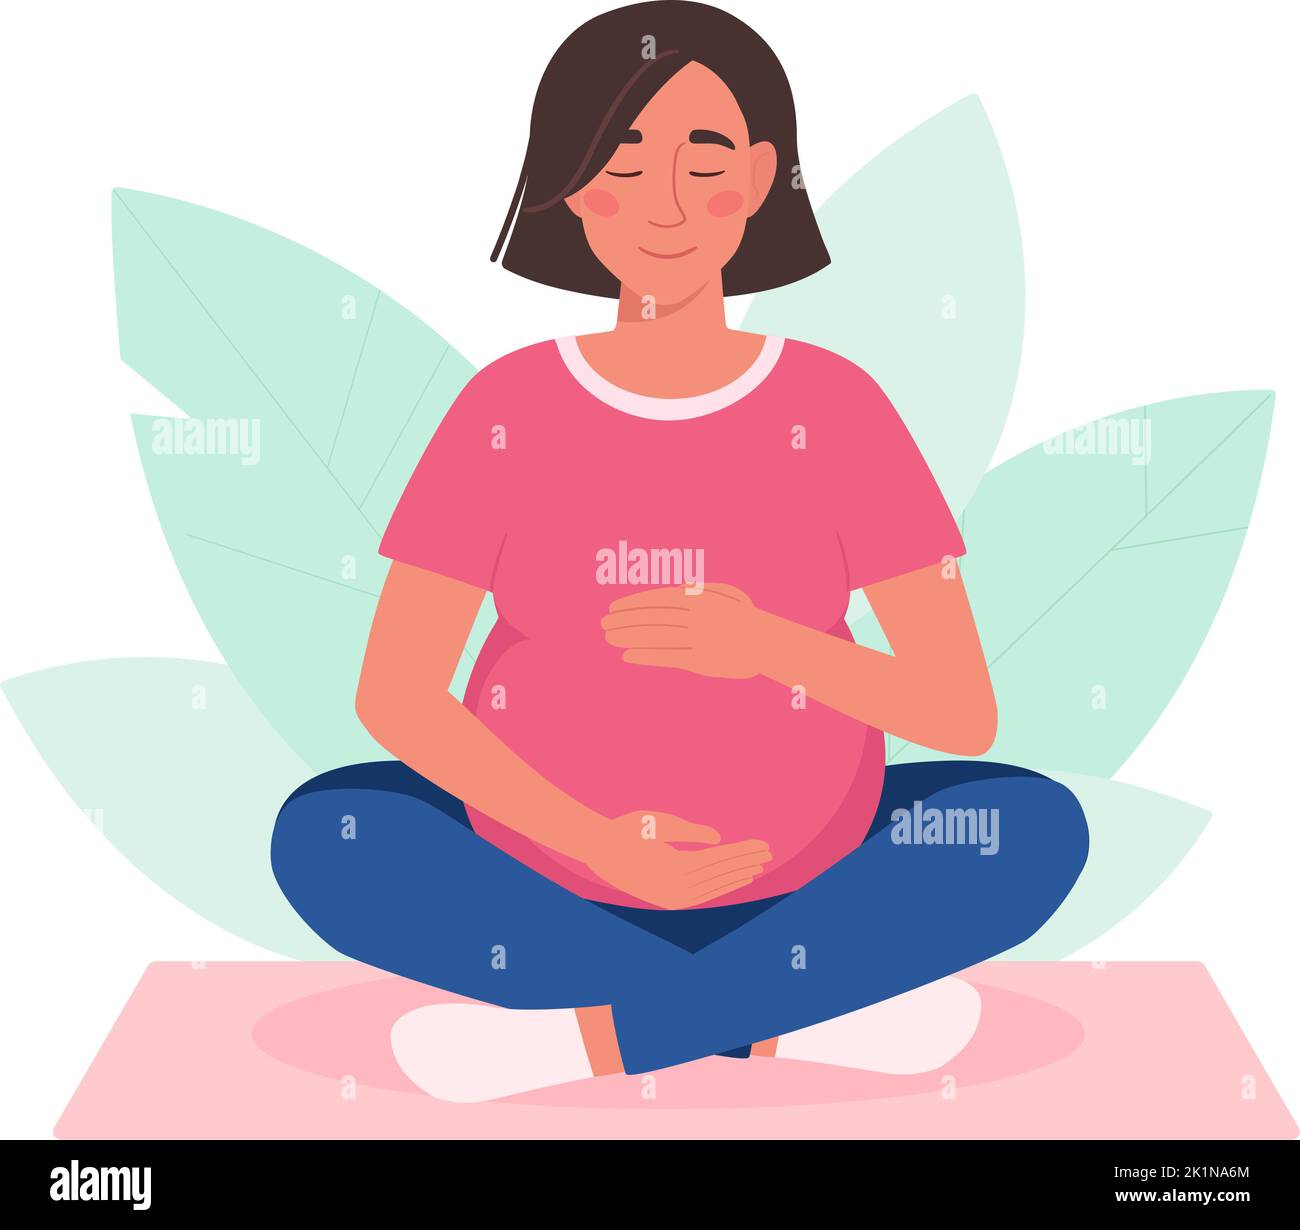 Une femme enceinte pratique le yoga. La fille est assise dans un asana, médite. Grossesse active. Siddhasana, virasana sur le tapis. Illustration vectorielle de style plat, arrière-plan isolé avec feuillage Illustration de Vecteur